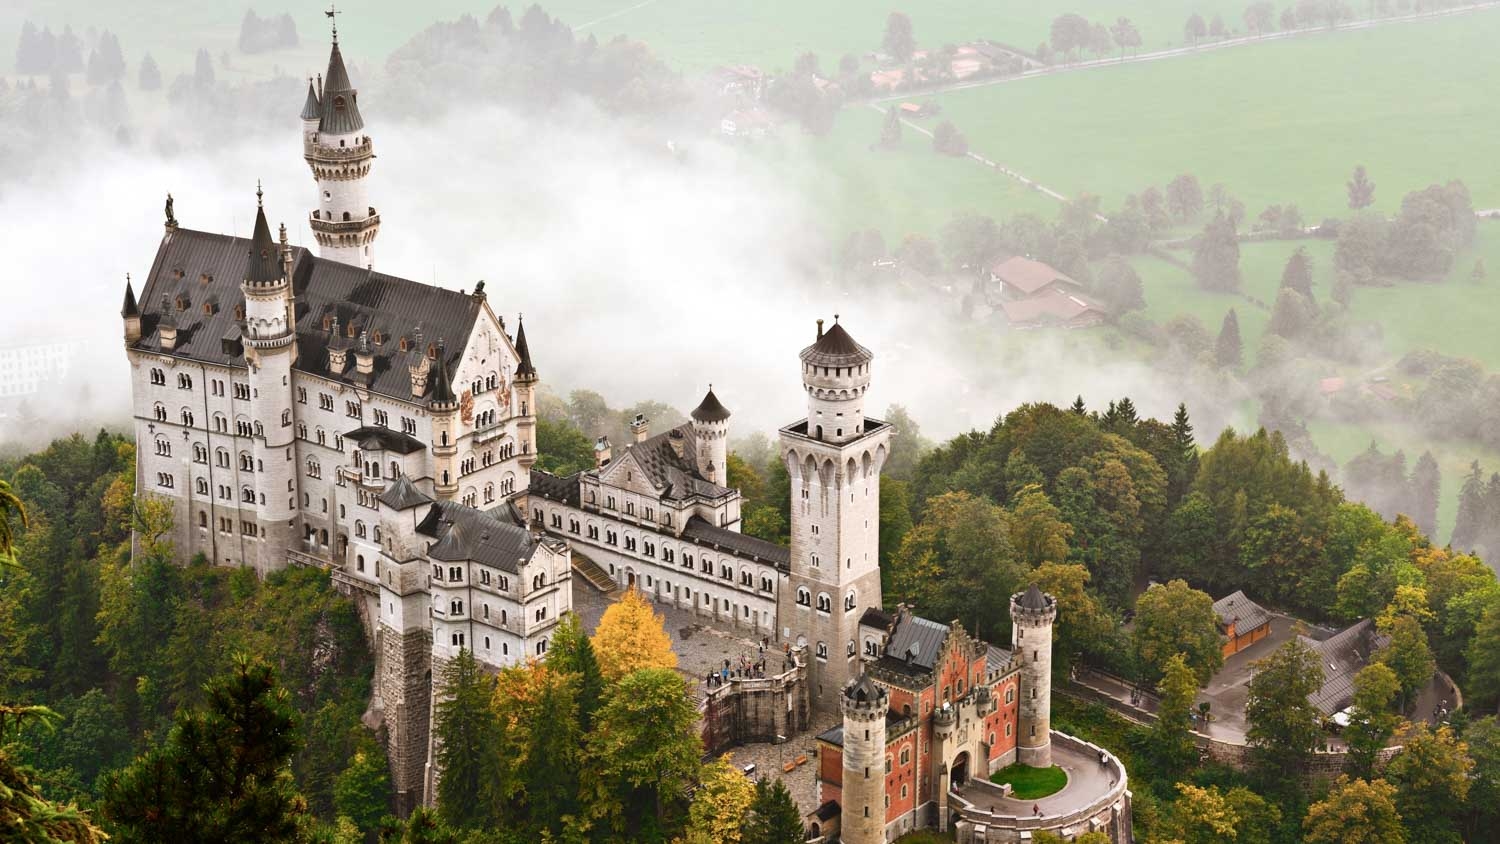 [VIDEO] Lâu đài Neuschwanstein - Thiên đường cổ tích của nước Đức